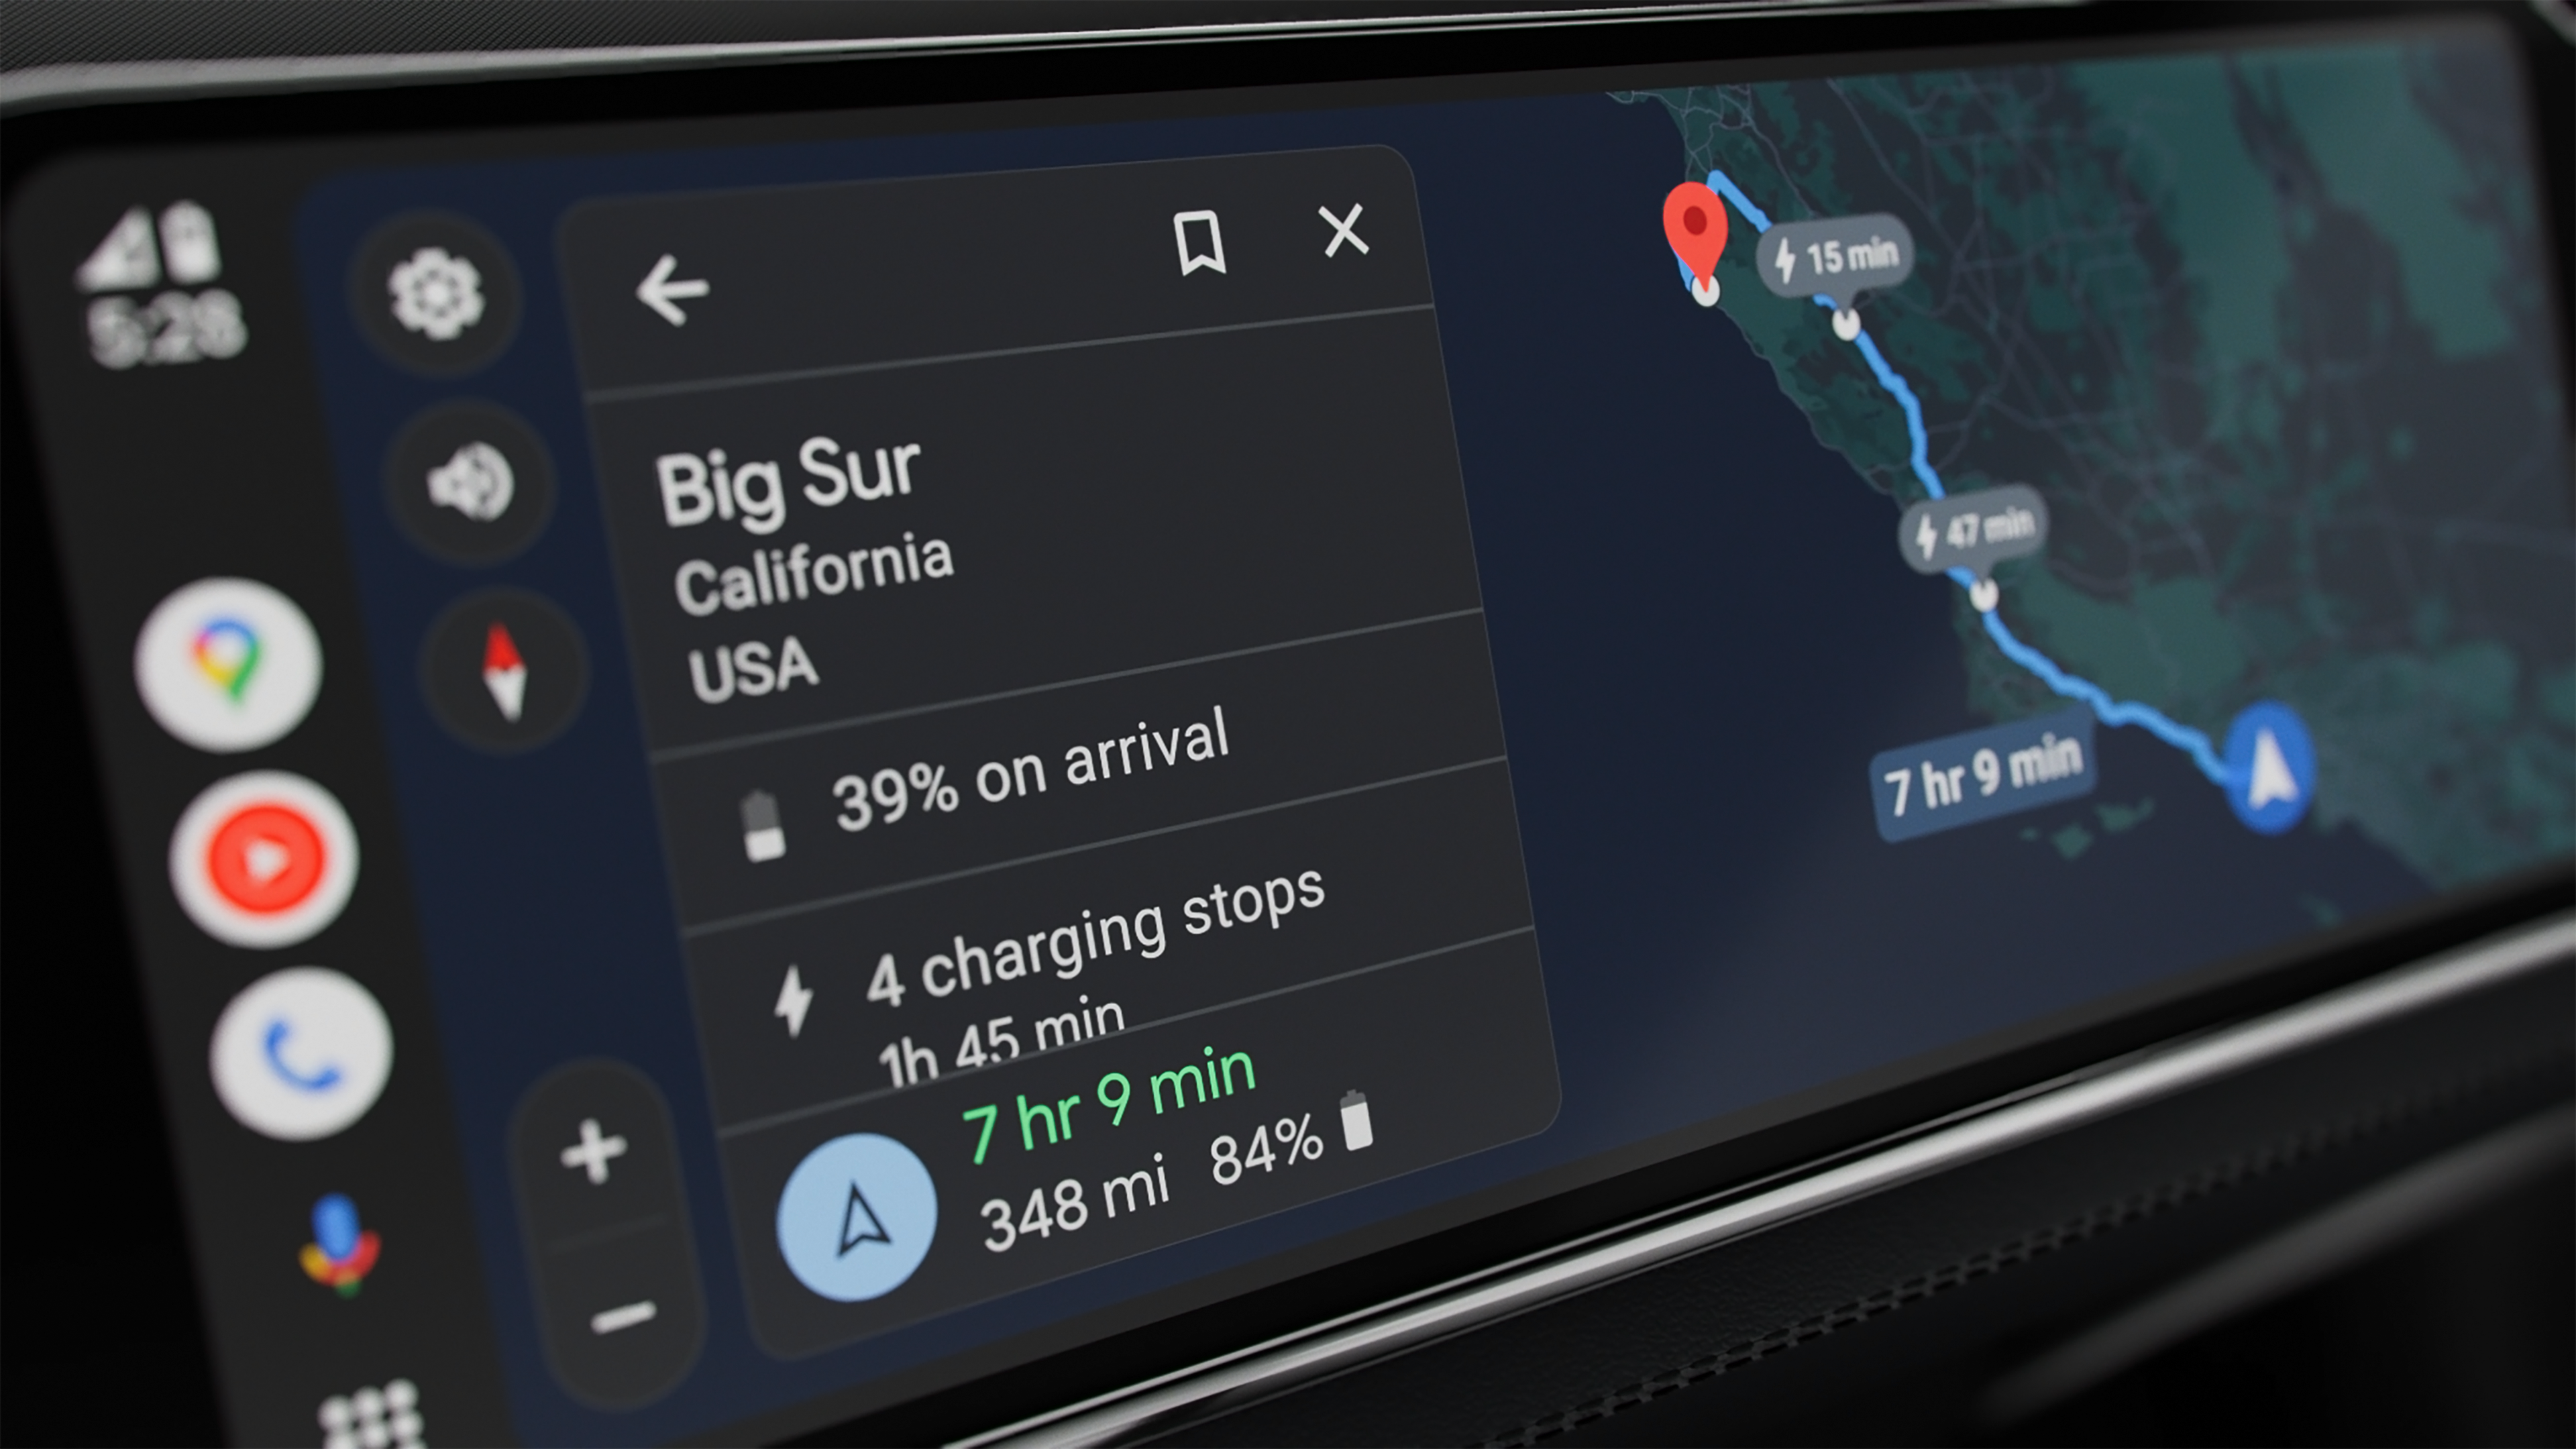 Interfaz de Android Auto mostrando los tiempos de carga de vehículos eléctricos.